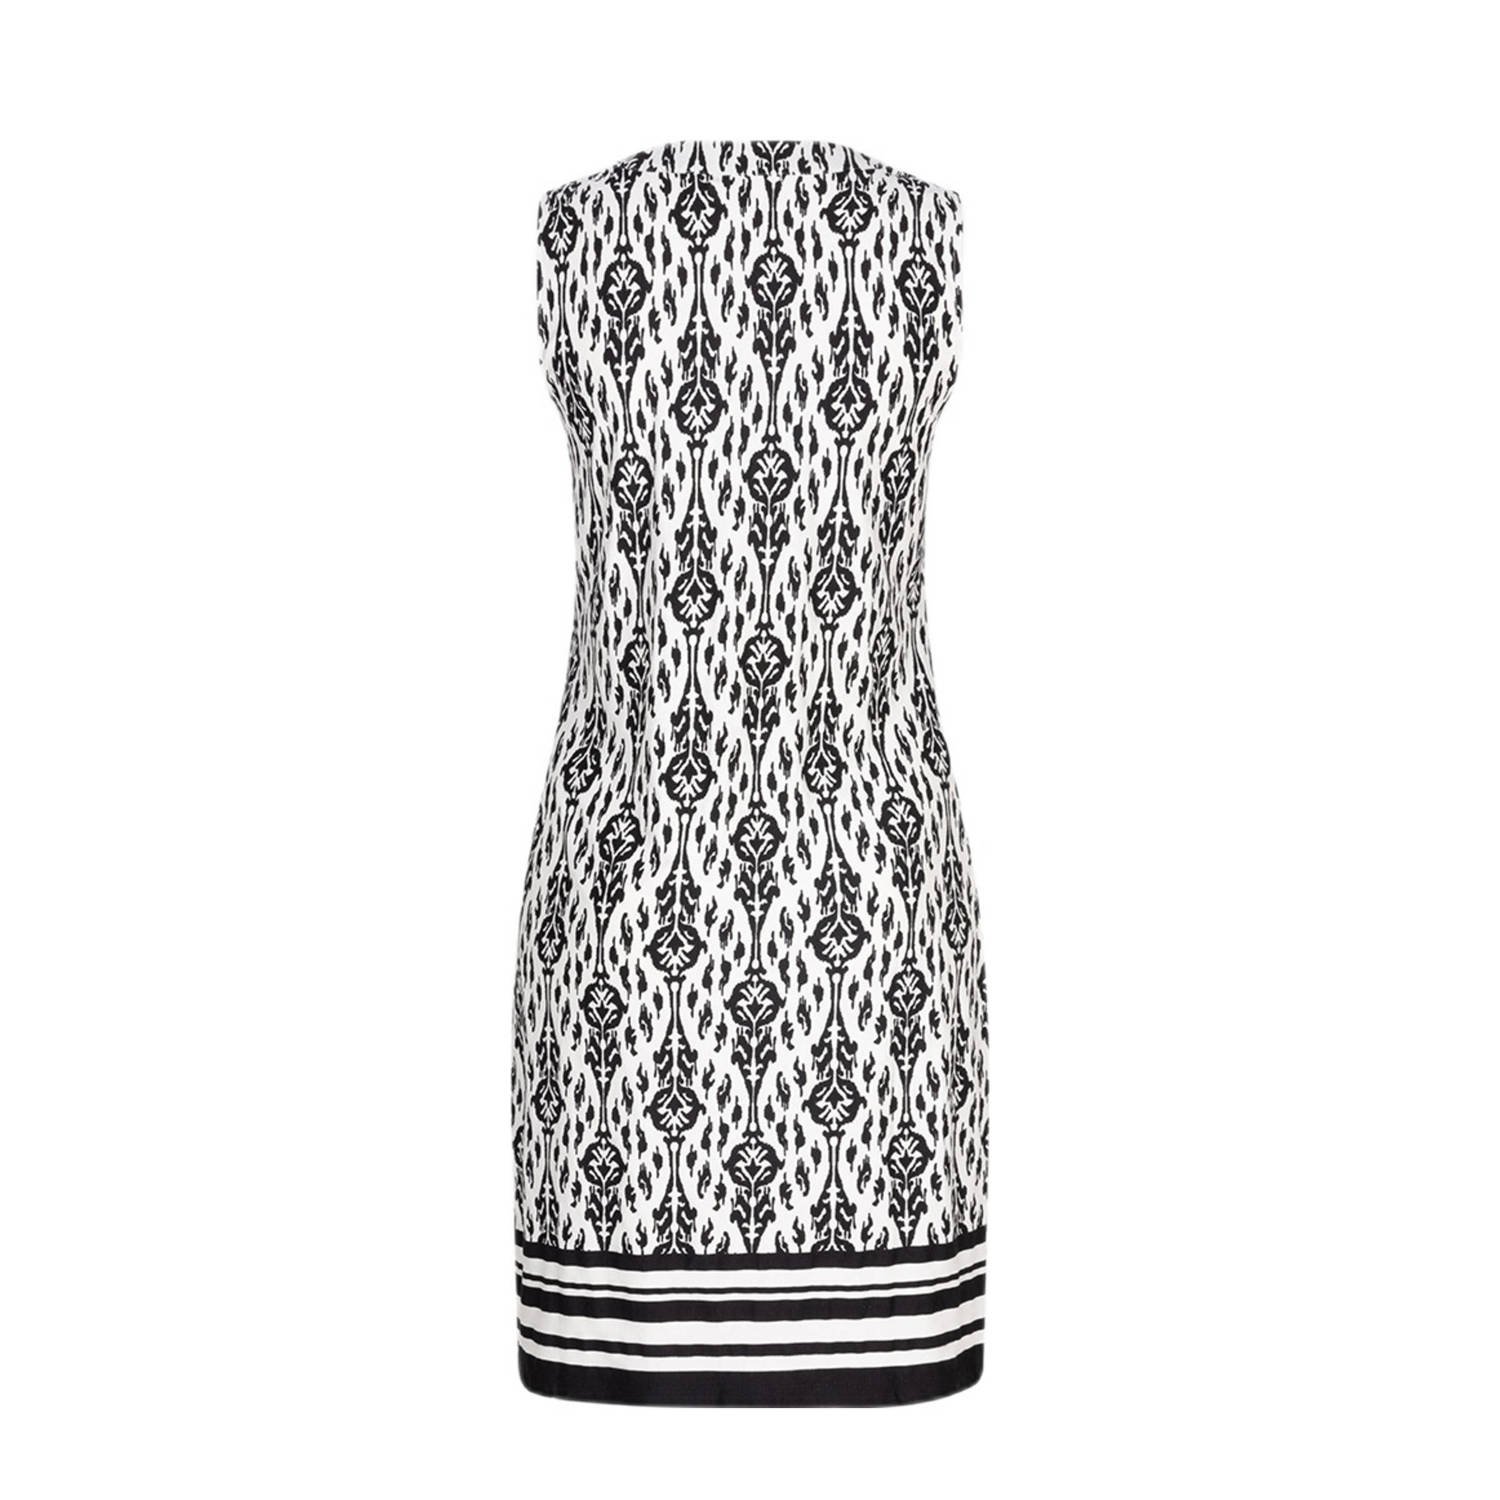 Esqualo jurk met all over print en kraaltjes wit zwart